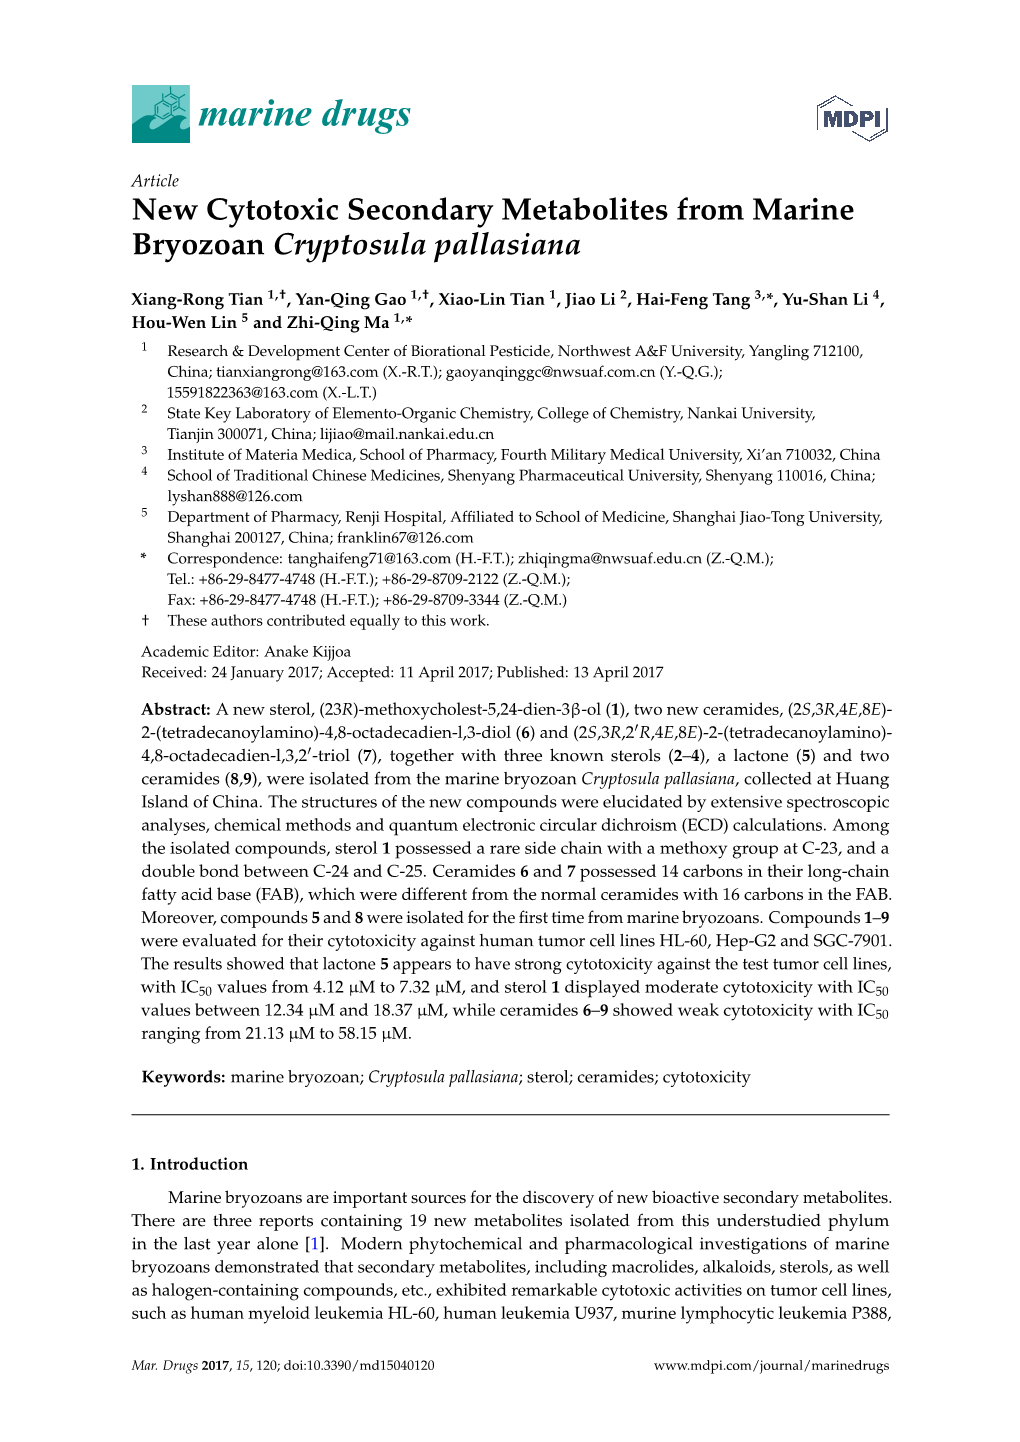 New Cytotoxic Secondary Metabolites from Marine Bryozoan Cryptosula Pallasiana